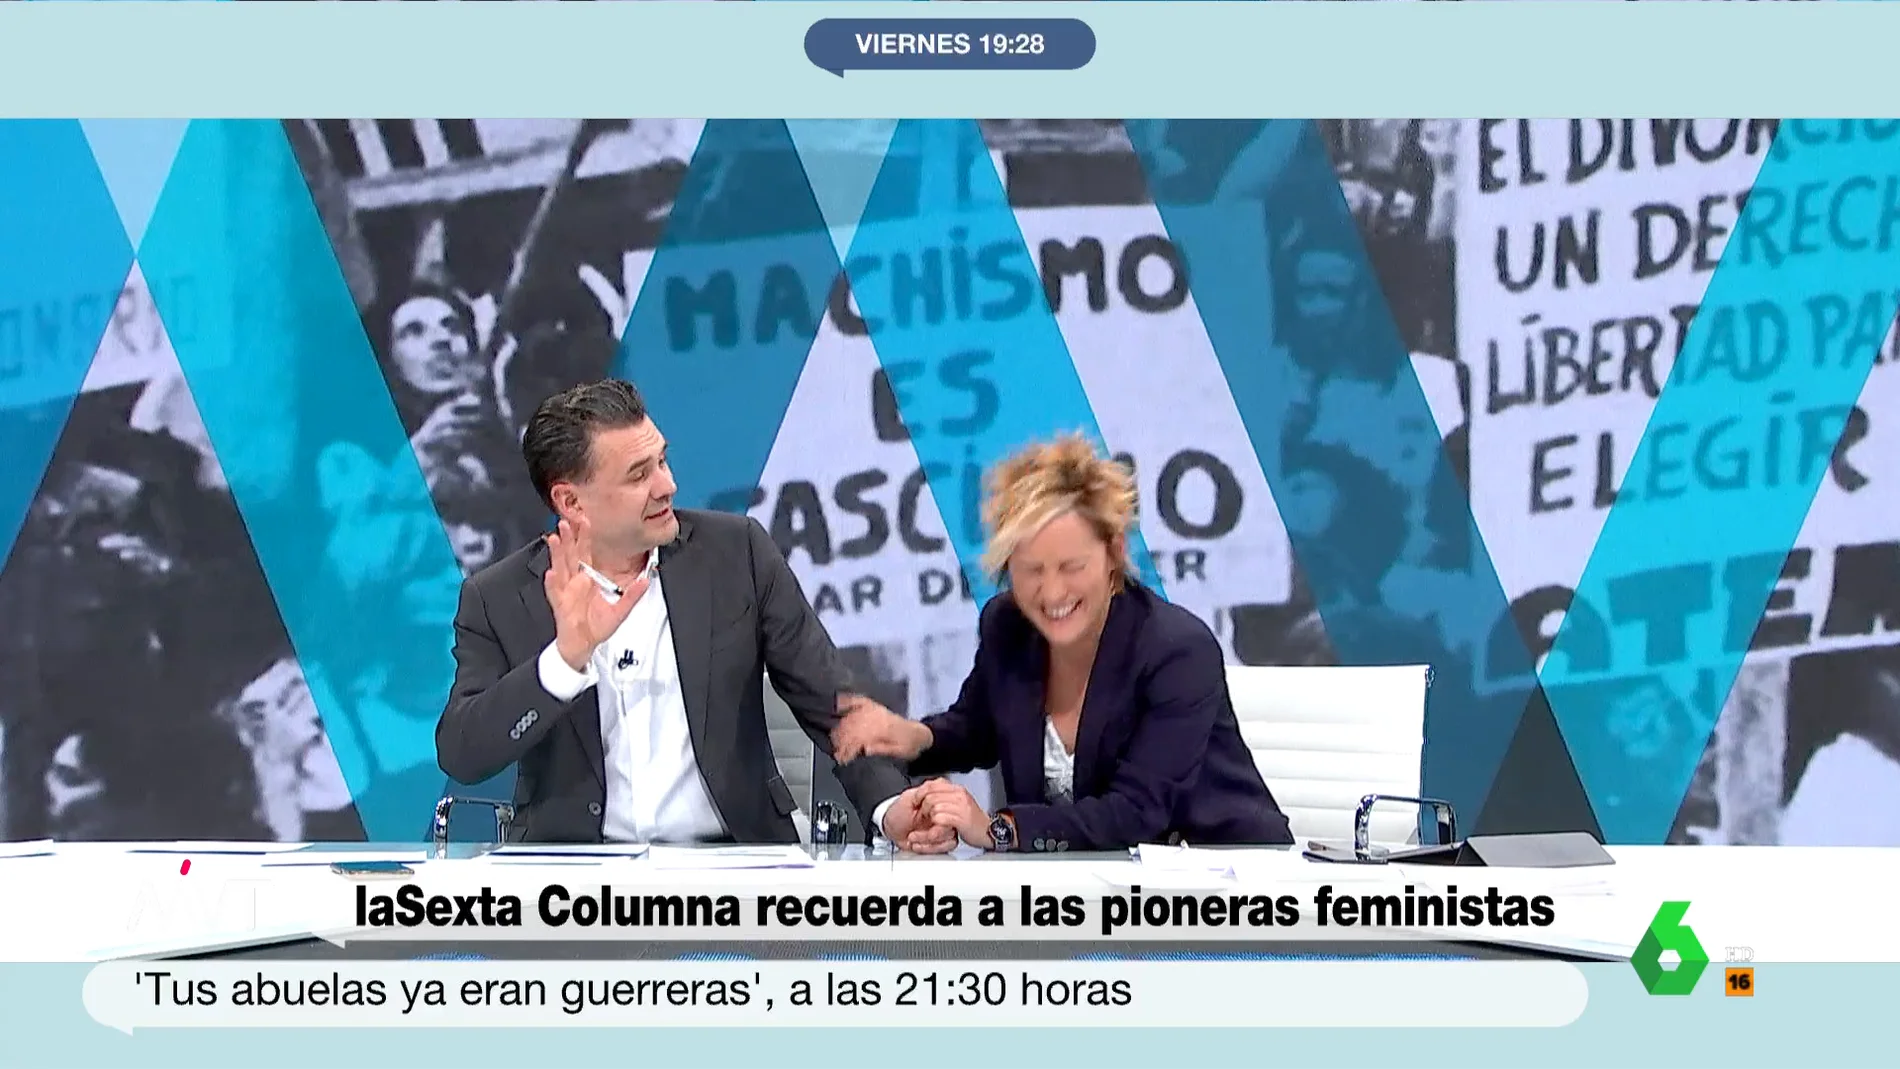 Cristina Pardo sufre un ataque de risa en directo ante la improvisación de Iñaki López